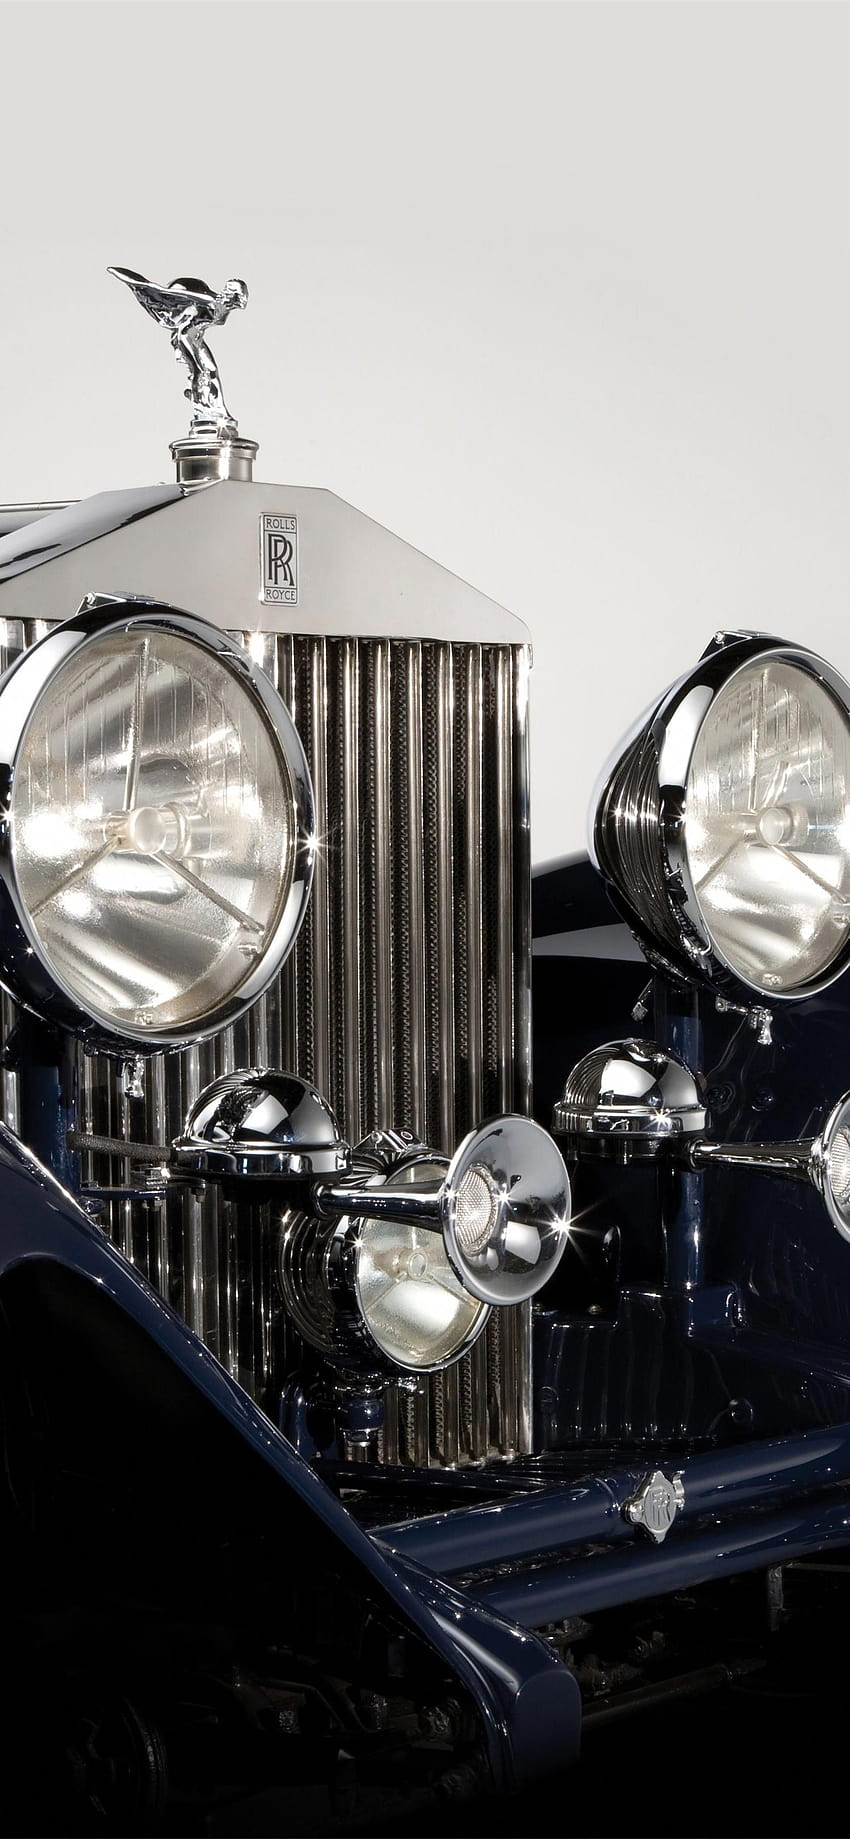 Rolls Royce Wallpapers  Top 35 Best Rolls Royce Backgrounds Download